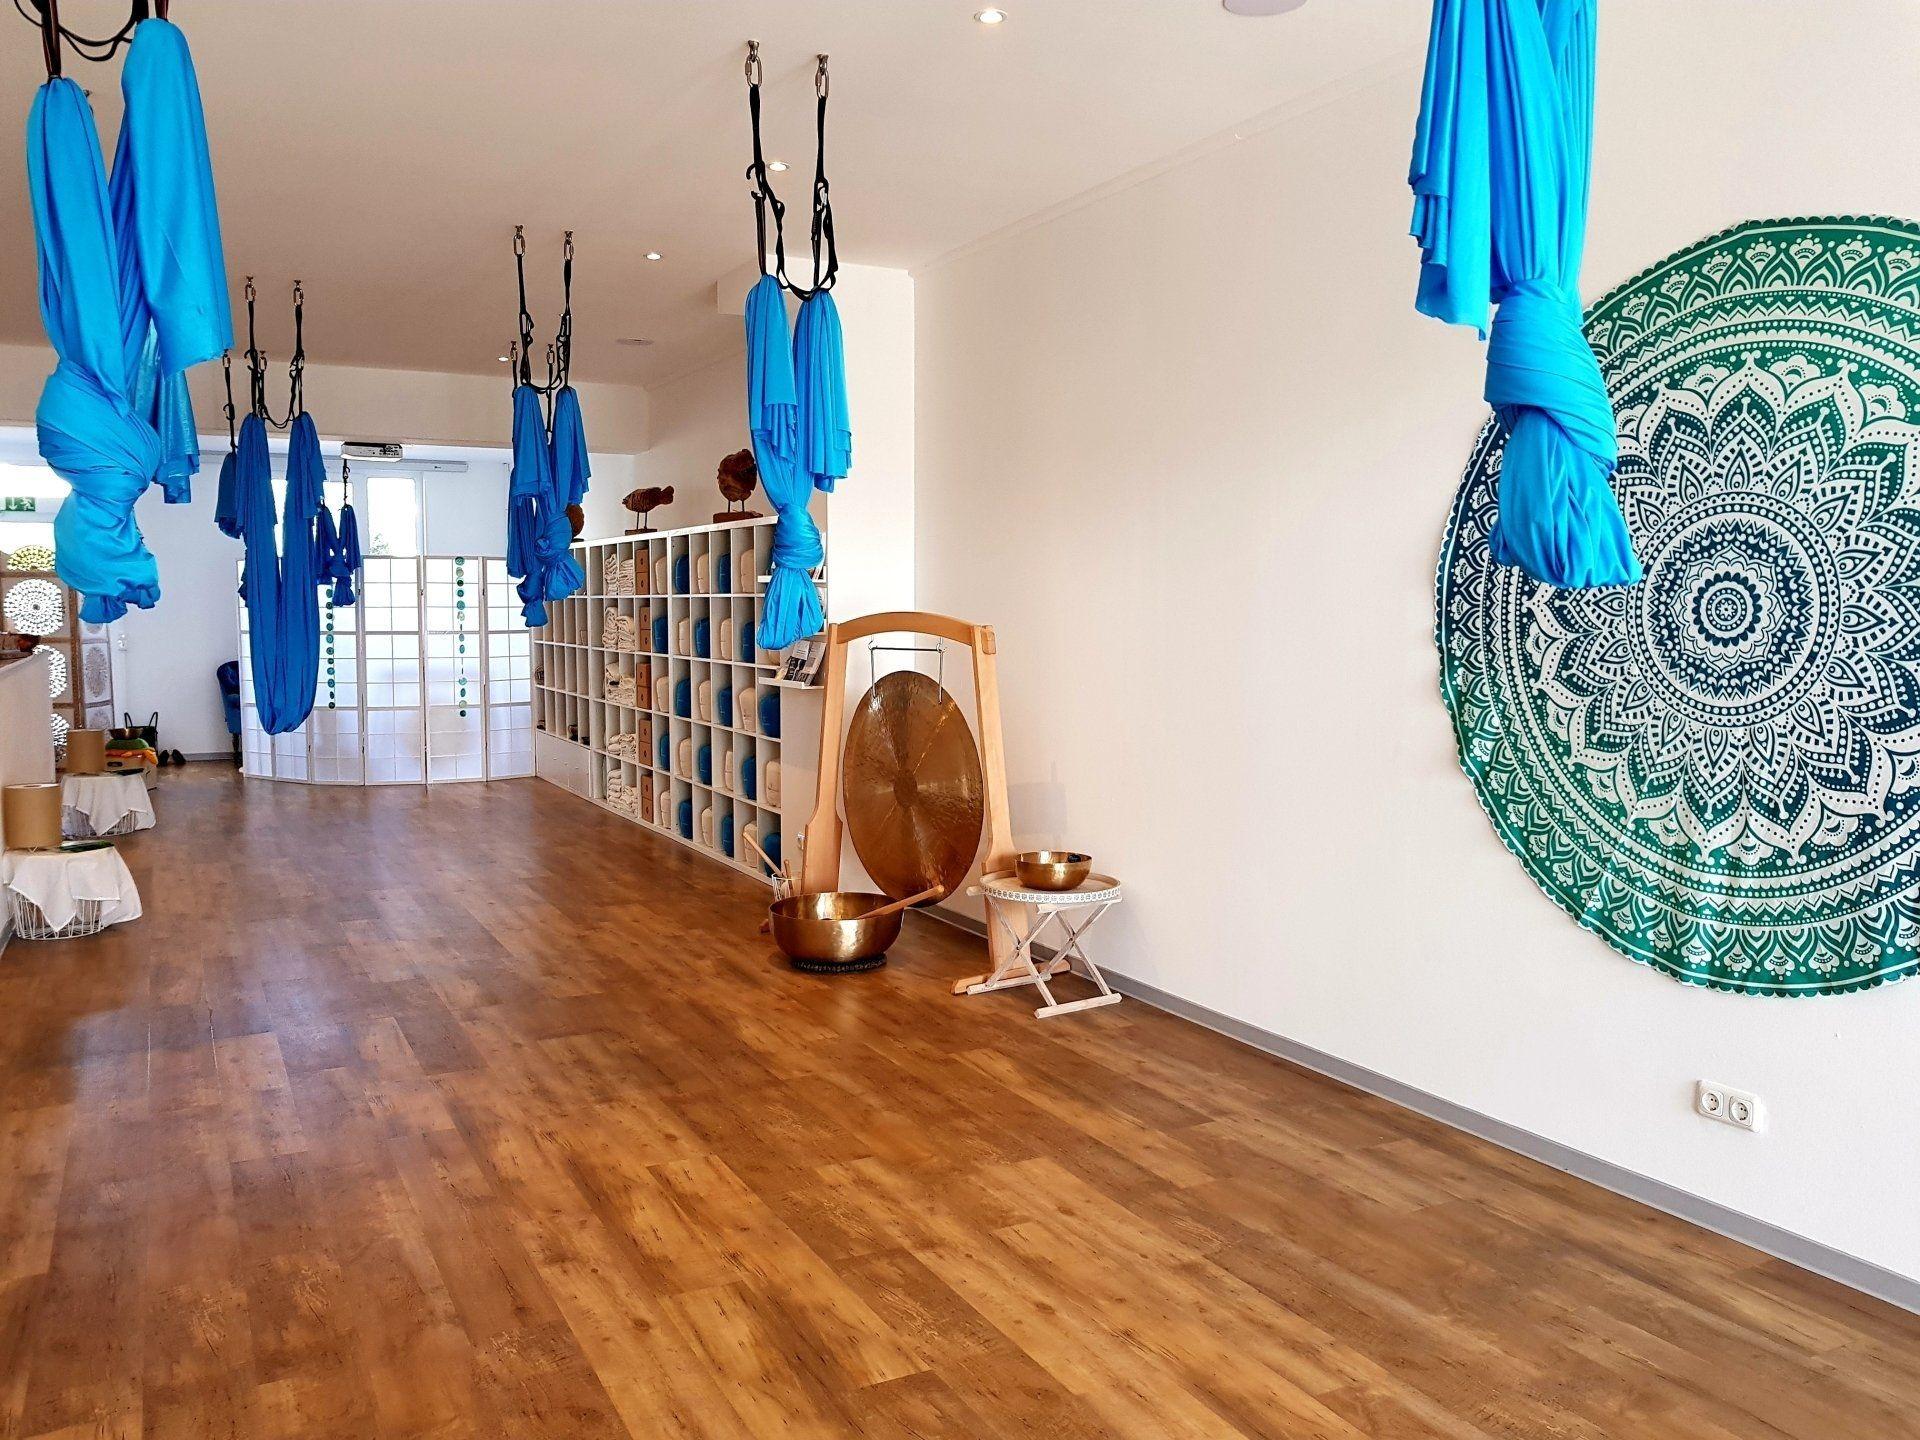 Ein Raum mit Aerial-Yoga-Tüchern, die von der Decke hängen